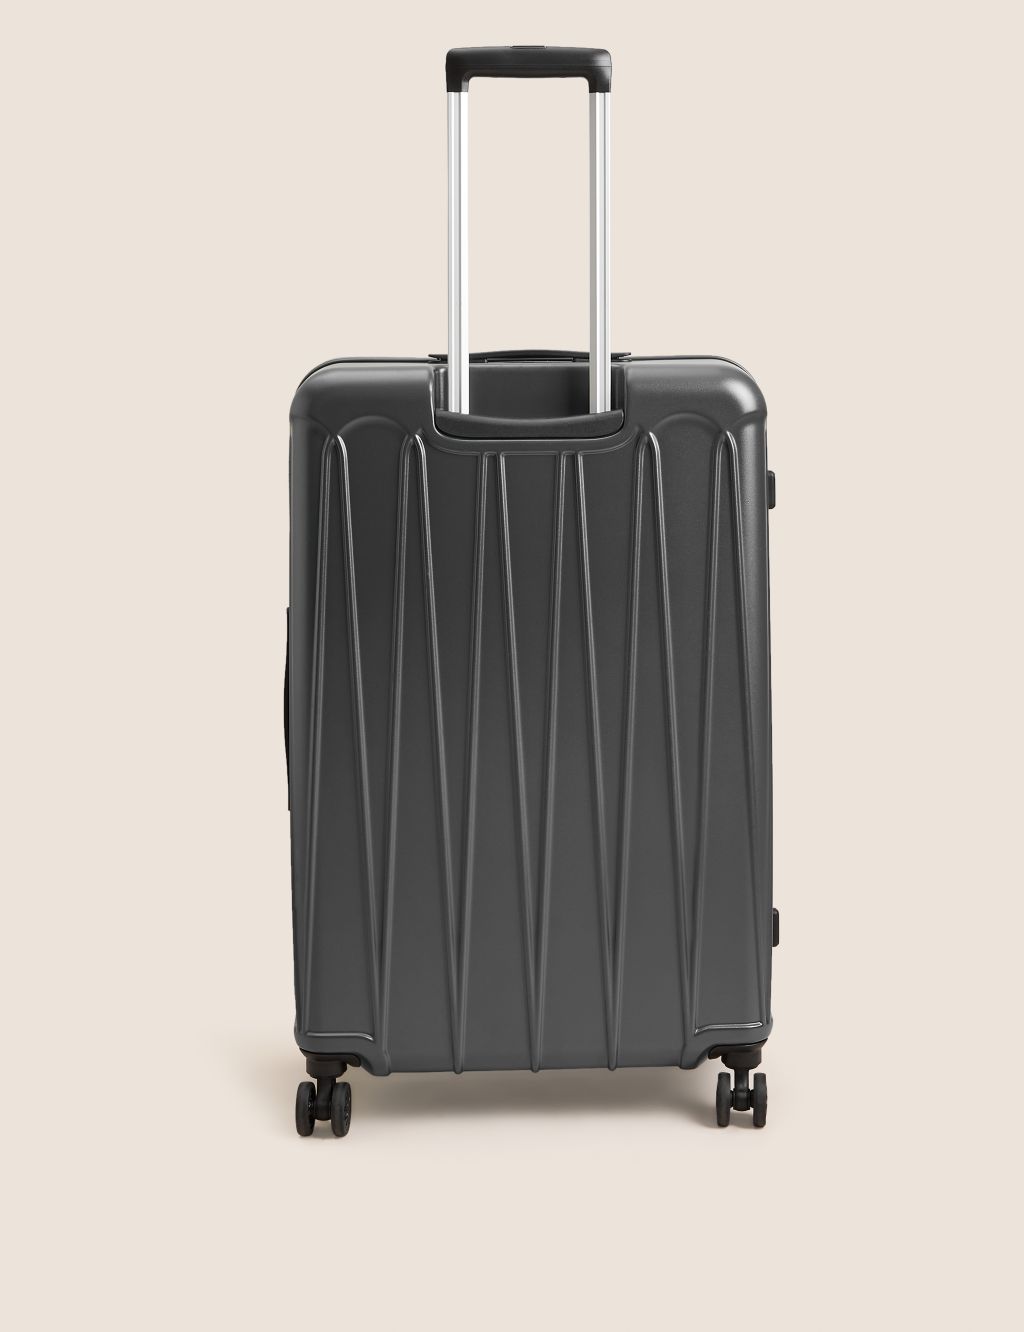 Amalfi 4 Wheel Hard Shell Large Suitcase image 4